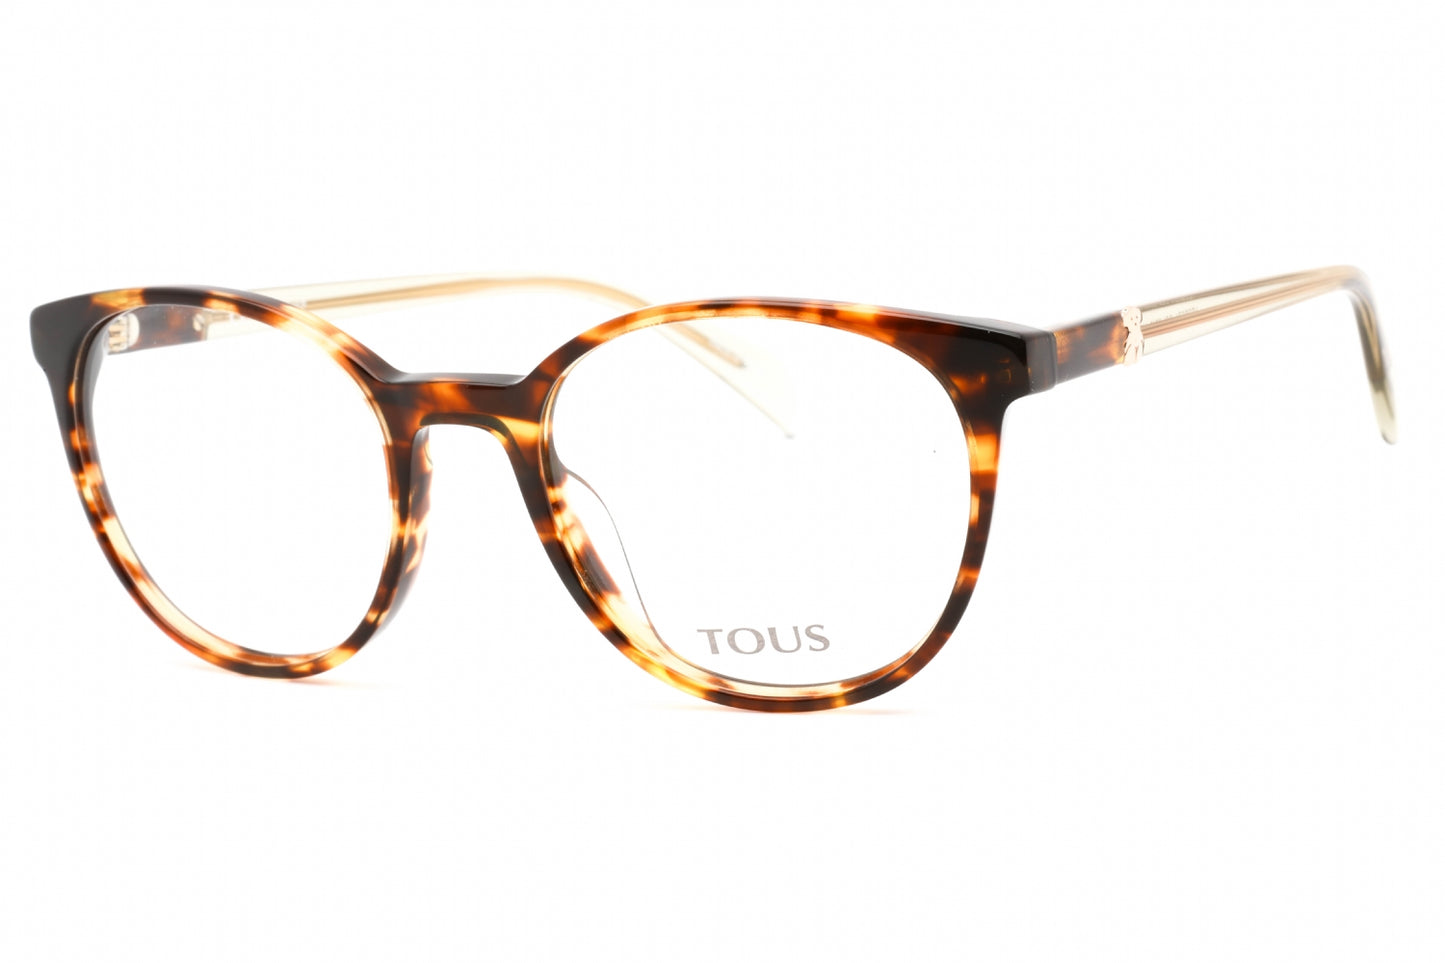 Tous VTOB37V-0743 50mm New Eyeglasses